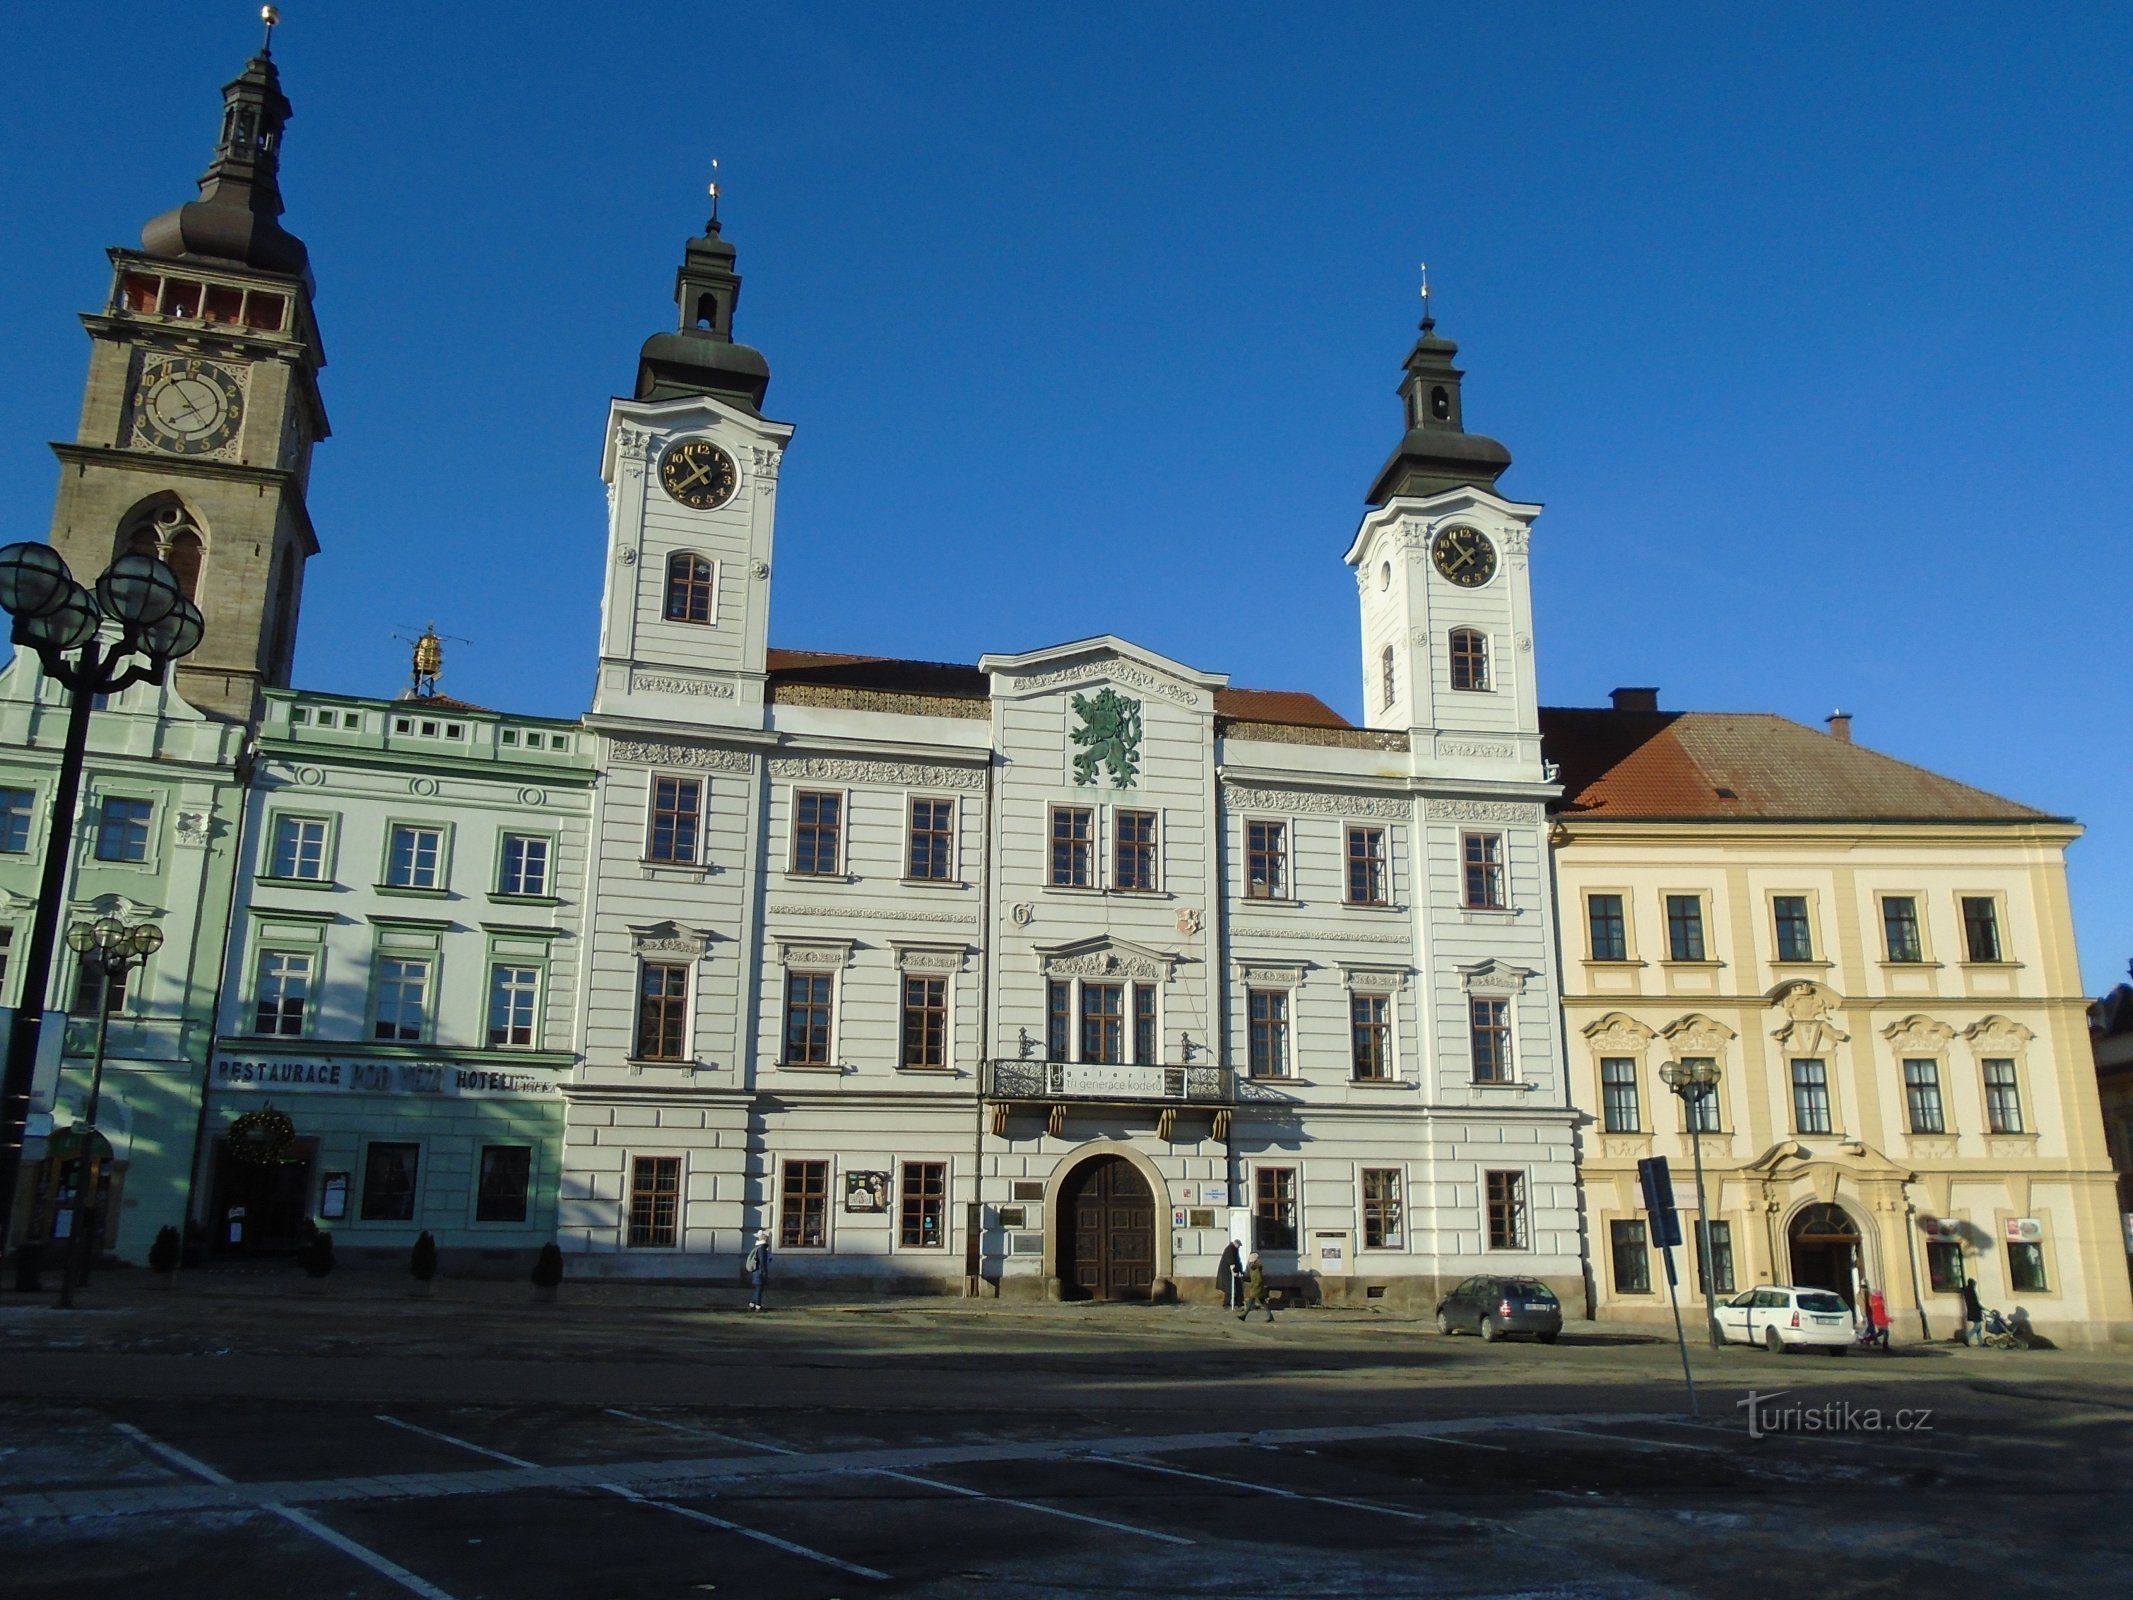 Velké náměstí br. 1 (Hradec Králové, 10.12.2017. listopada XNUMX.)